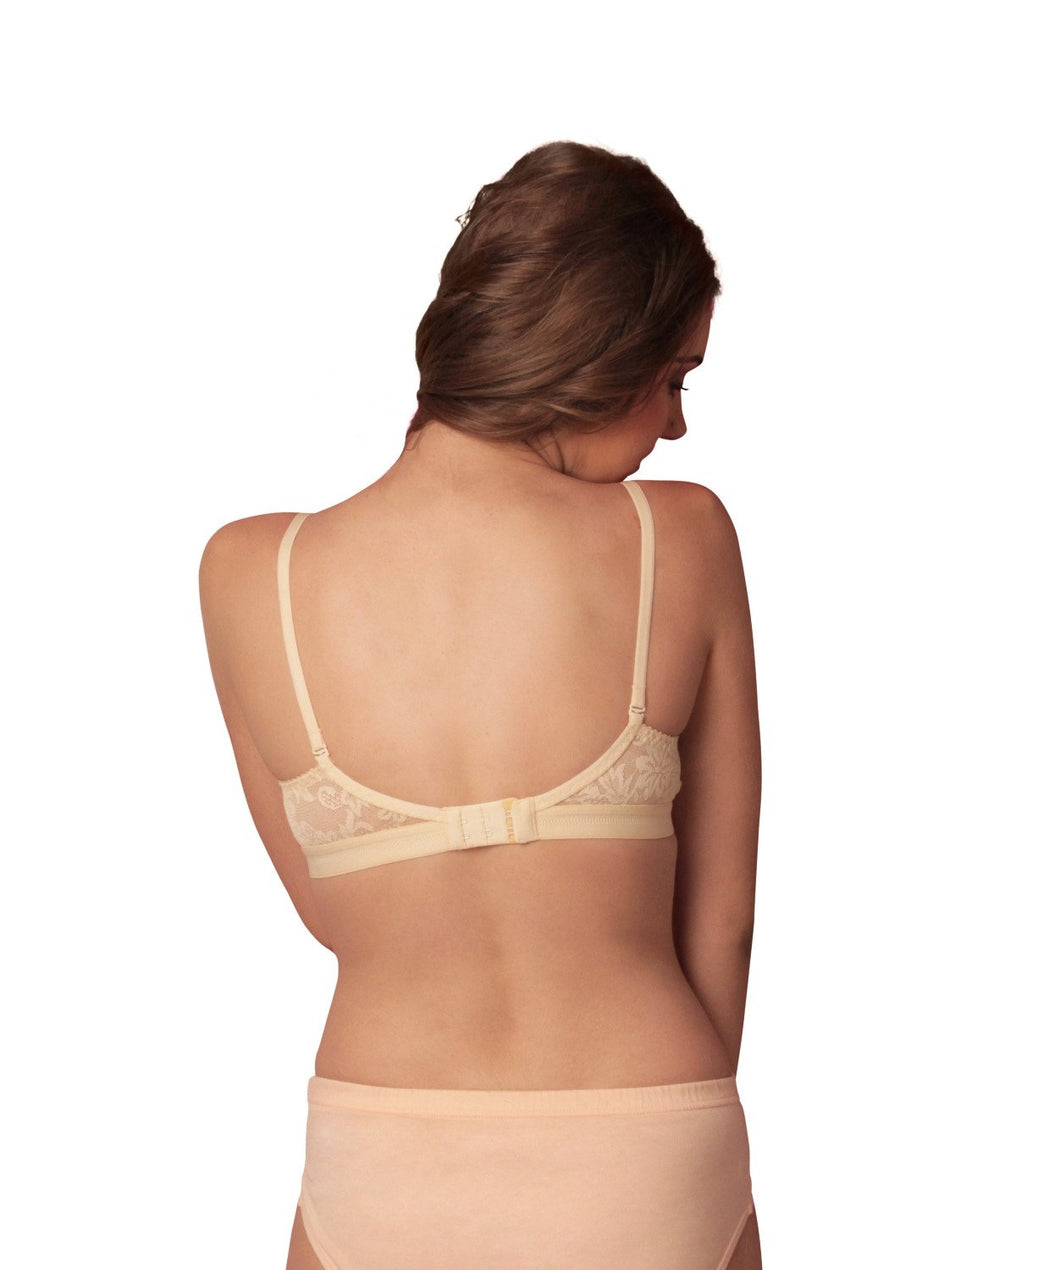 Ladies Cotton Bra Online (2) – Sonaebuy – online bra, women's lingerie,  Women's underwear, nightwear